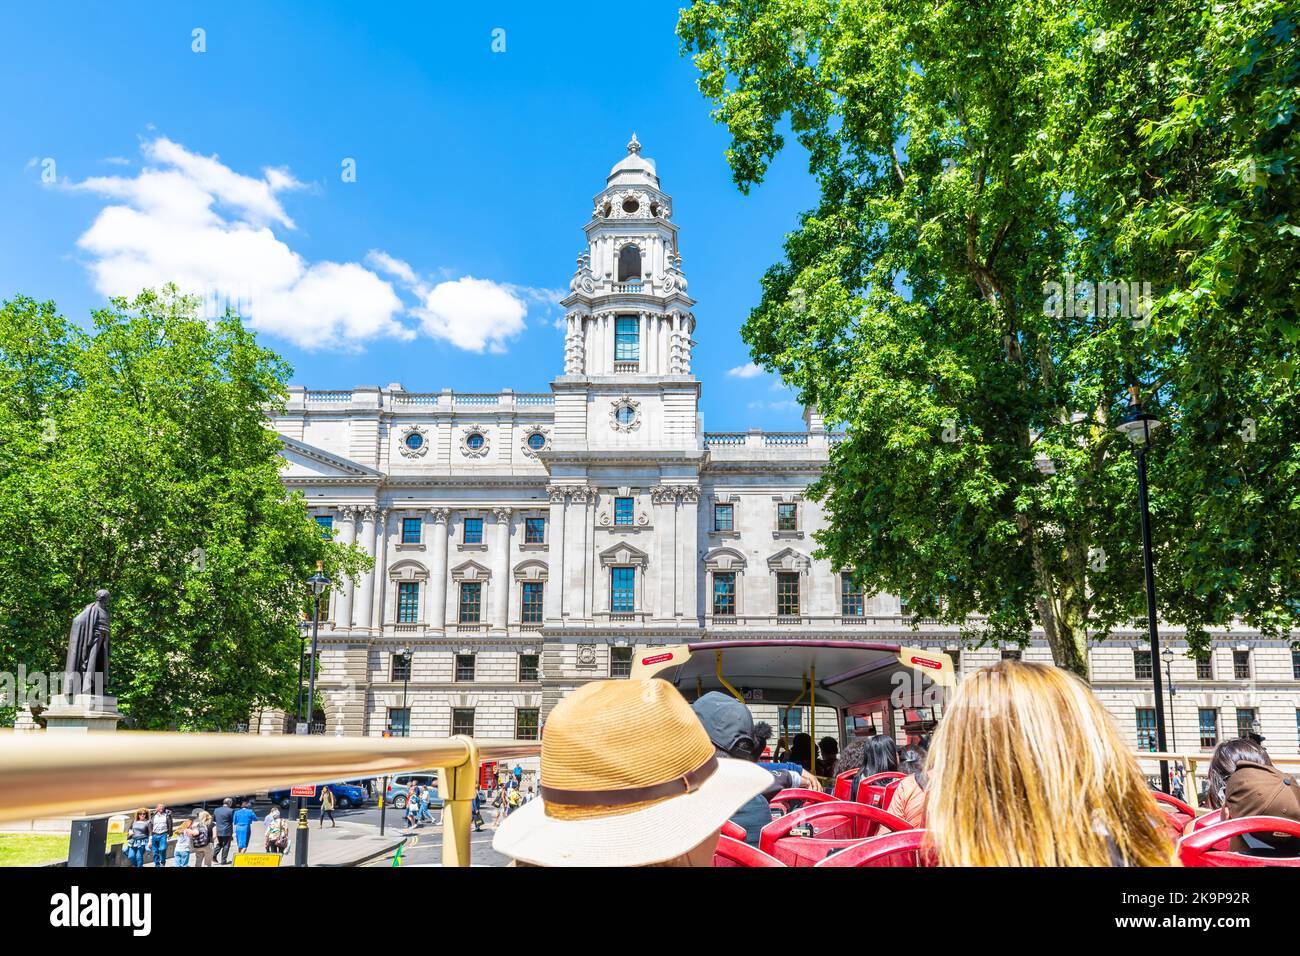 Londres, Reino Unido - 22 de junio de 2018: Recorrido guiado con vista de ángulo alto en Big Bus con personas en las oficinas gubernamentales de la plaza del Parlamento de Westminster Foto de stock